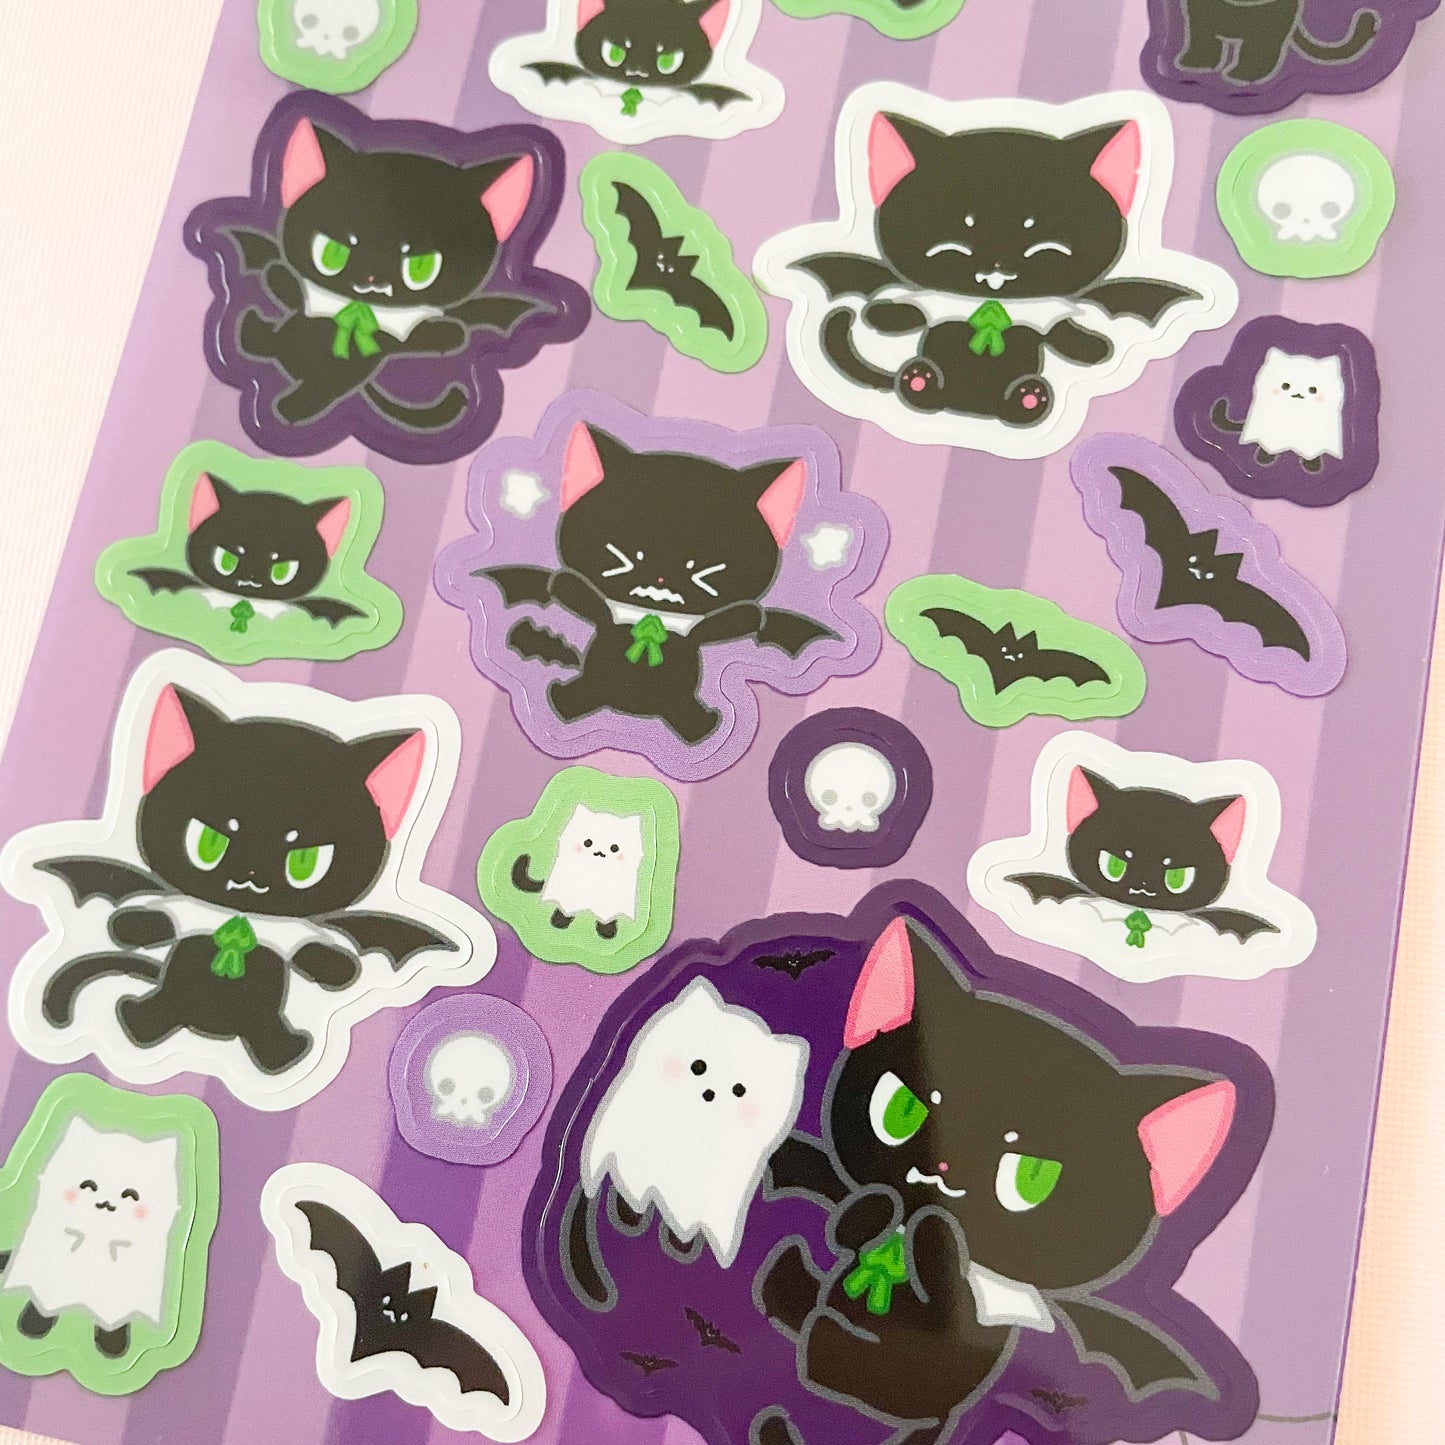 CatBat Sticker Sheet